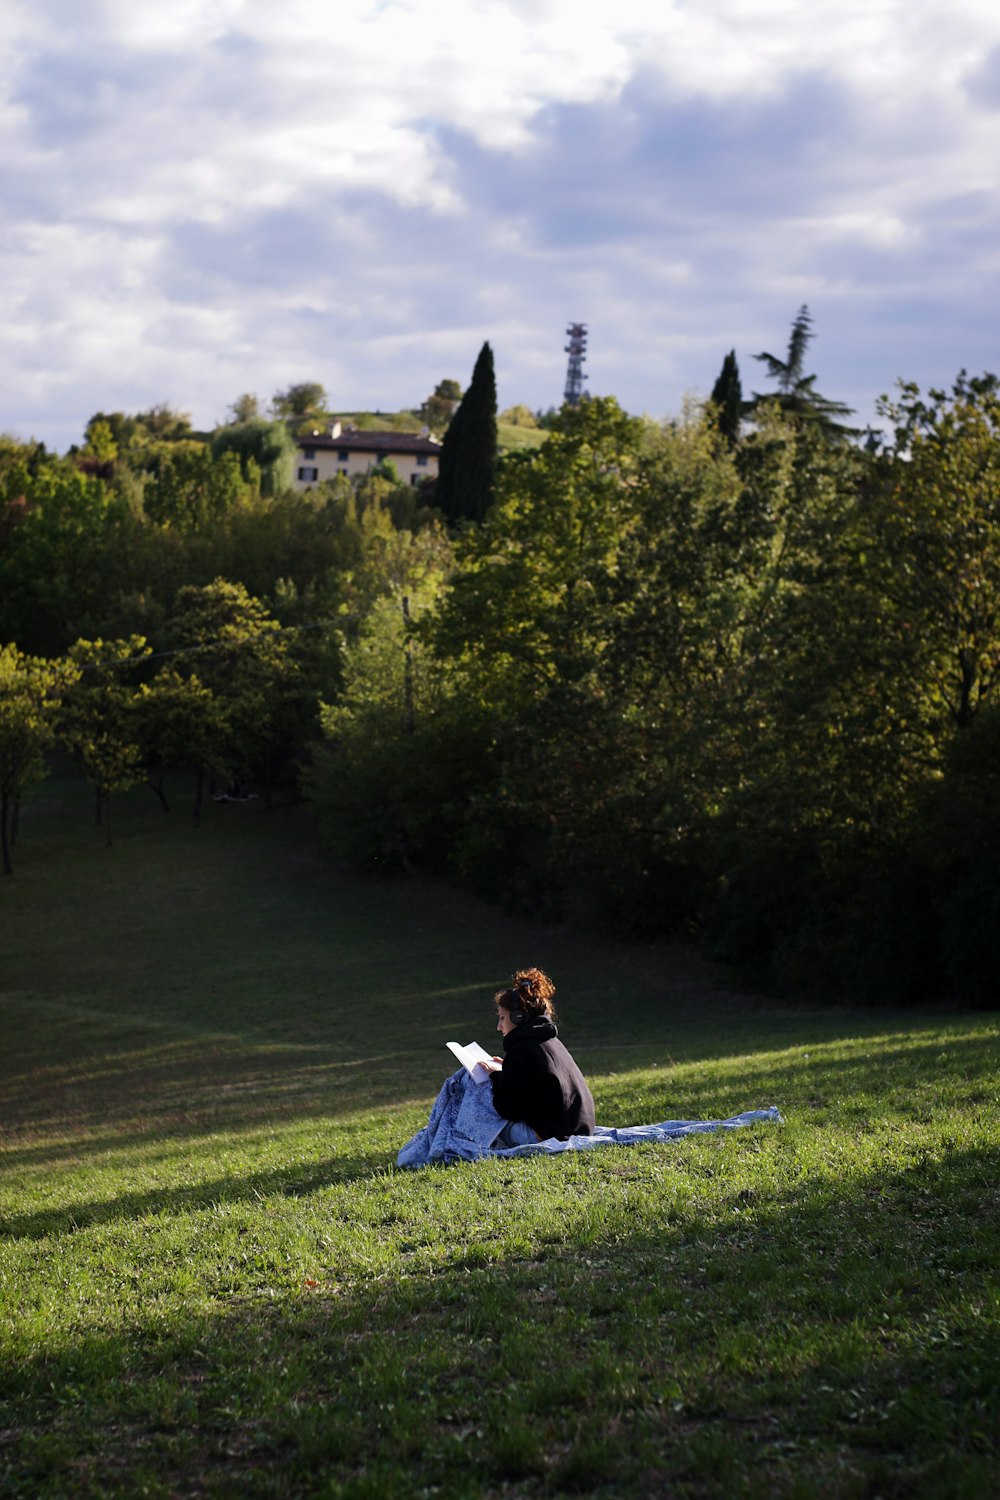 昼間、緑の芝生の上に座る青いドレスを着た女性